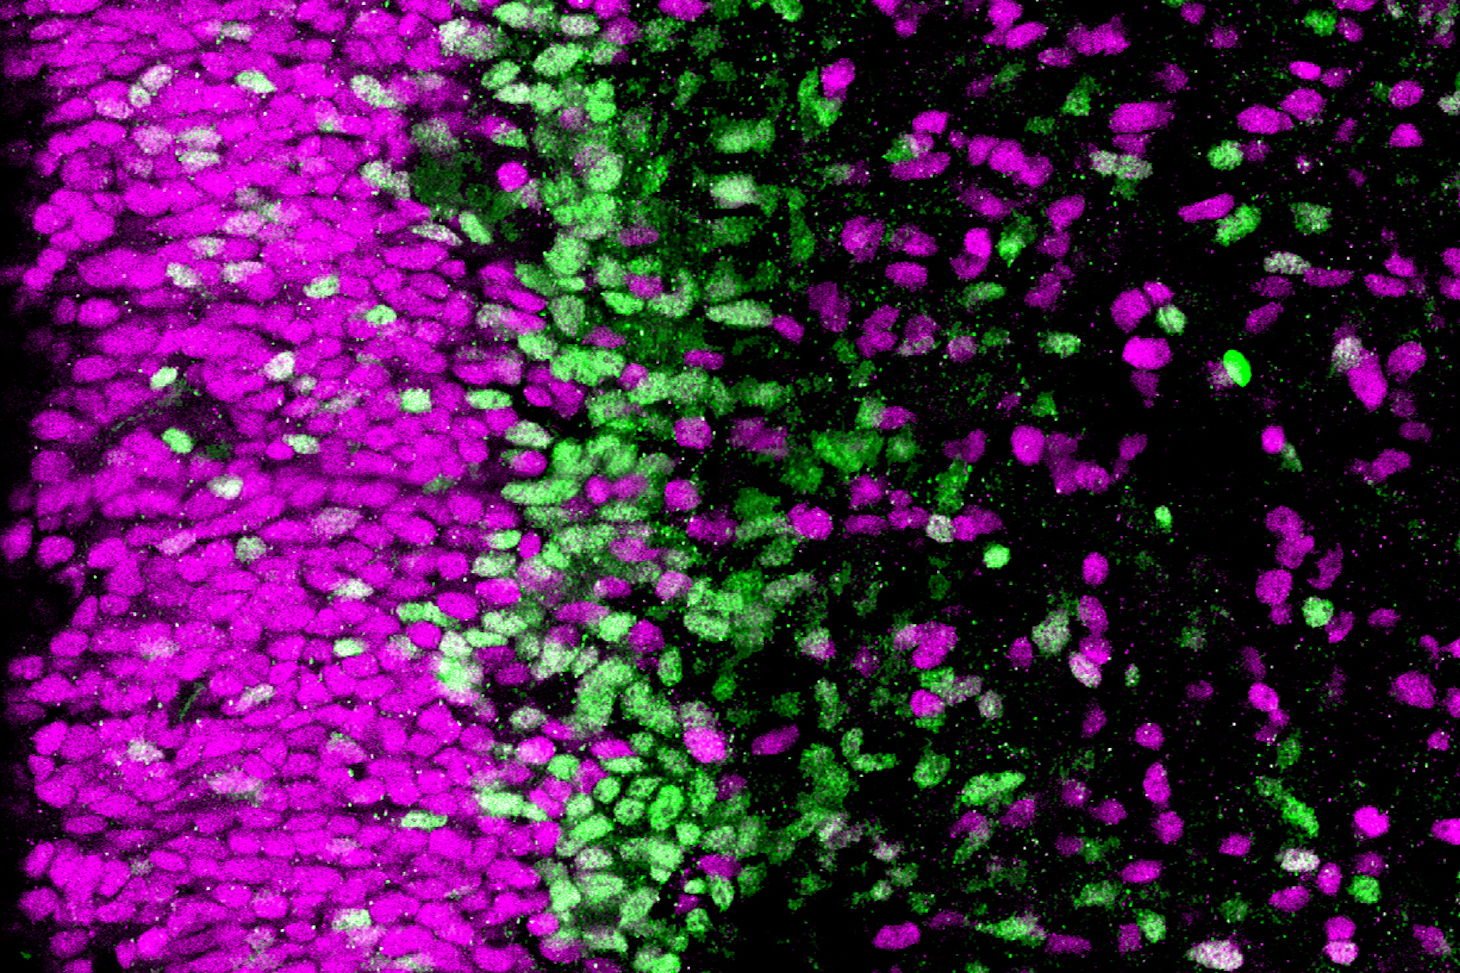 Coupe de cerveau humain (cortex). Les cellules progénitrices en magenta sont moins engagées dans la différenciation neuronale que celles en vert © Monia Barnat/Grenoble Institut des Neurosciences/Inserm, Université Grenoble Alpes